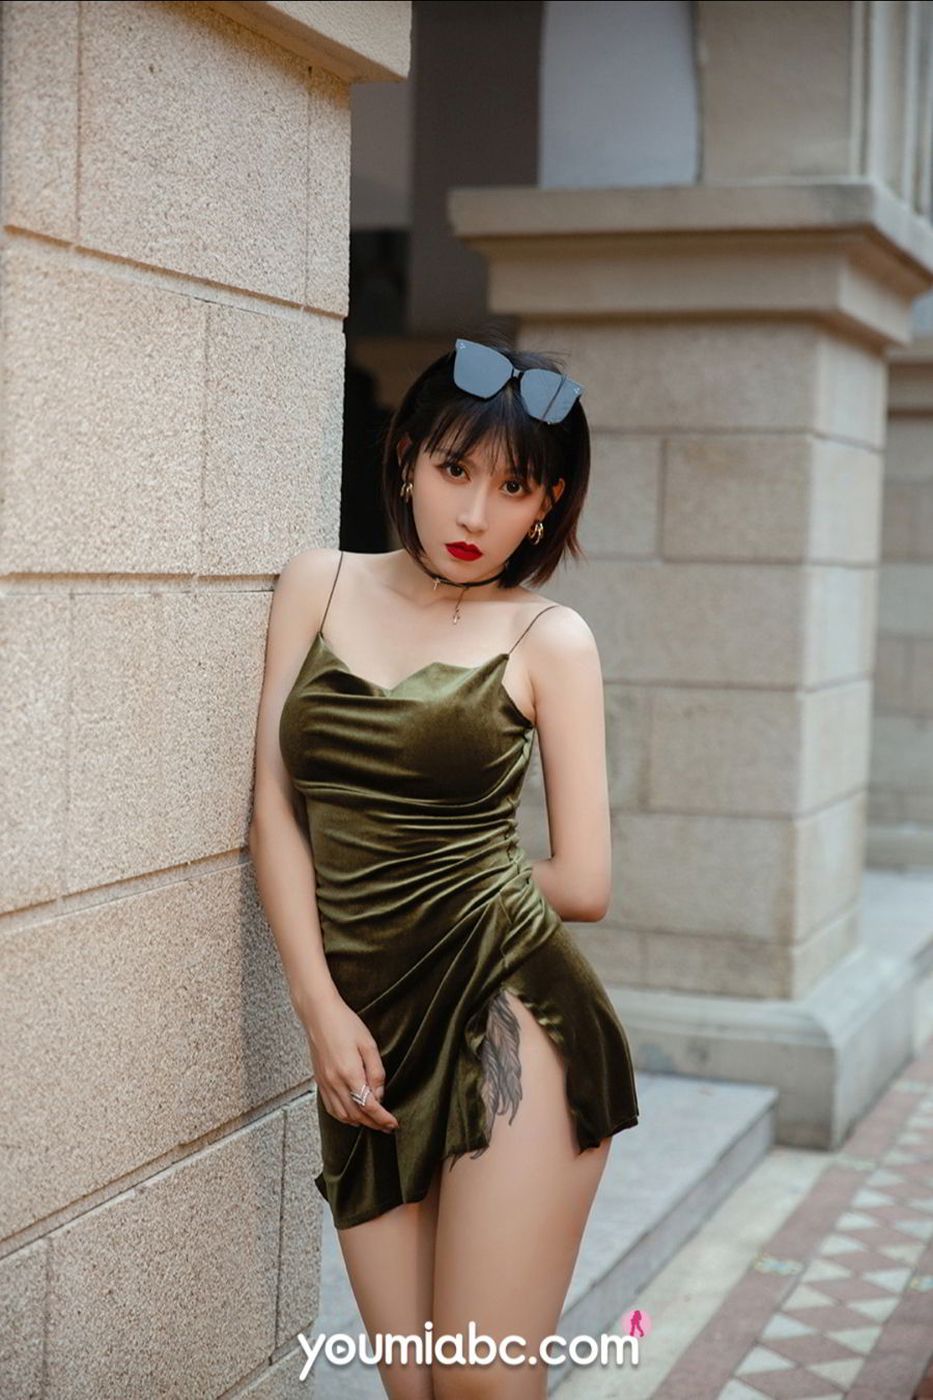 美女模特安妮斯朵拉墨绿色吊裙S型身材极致写真